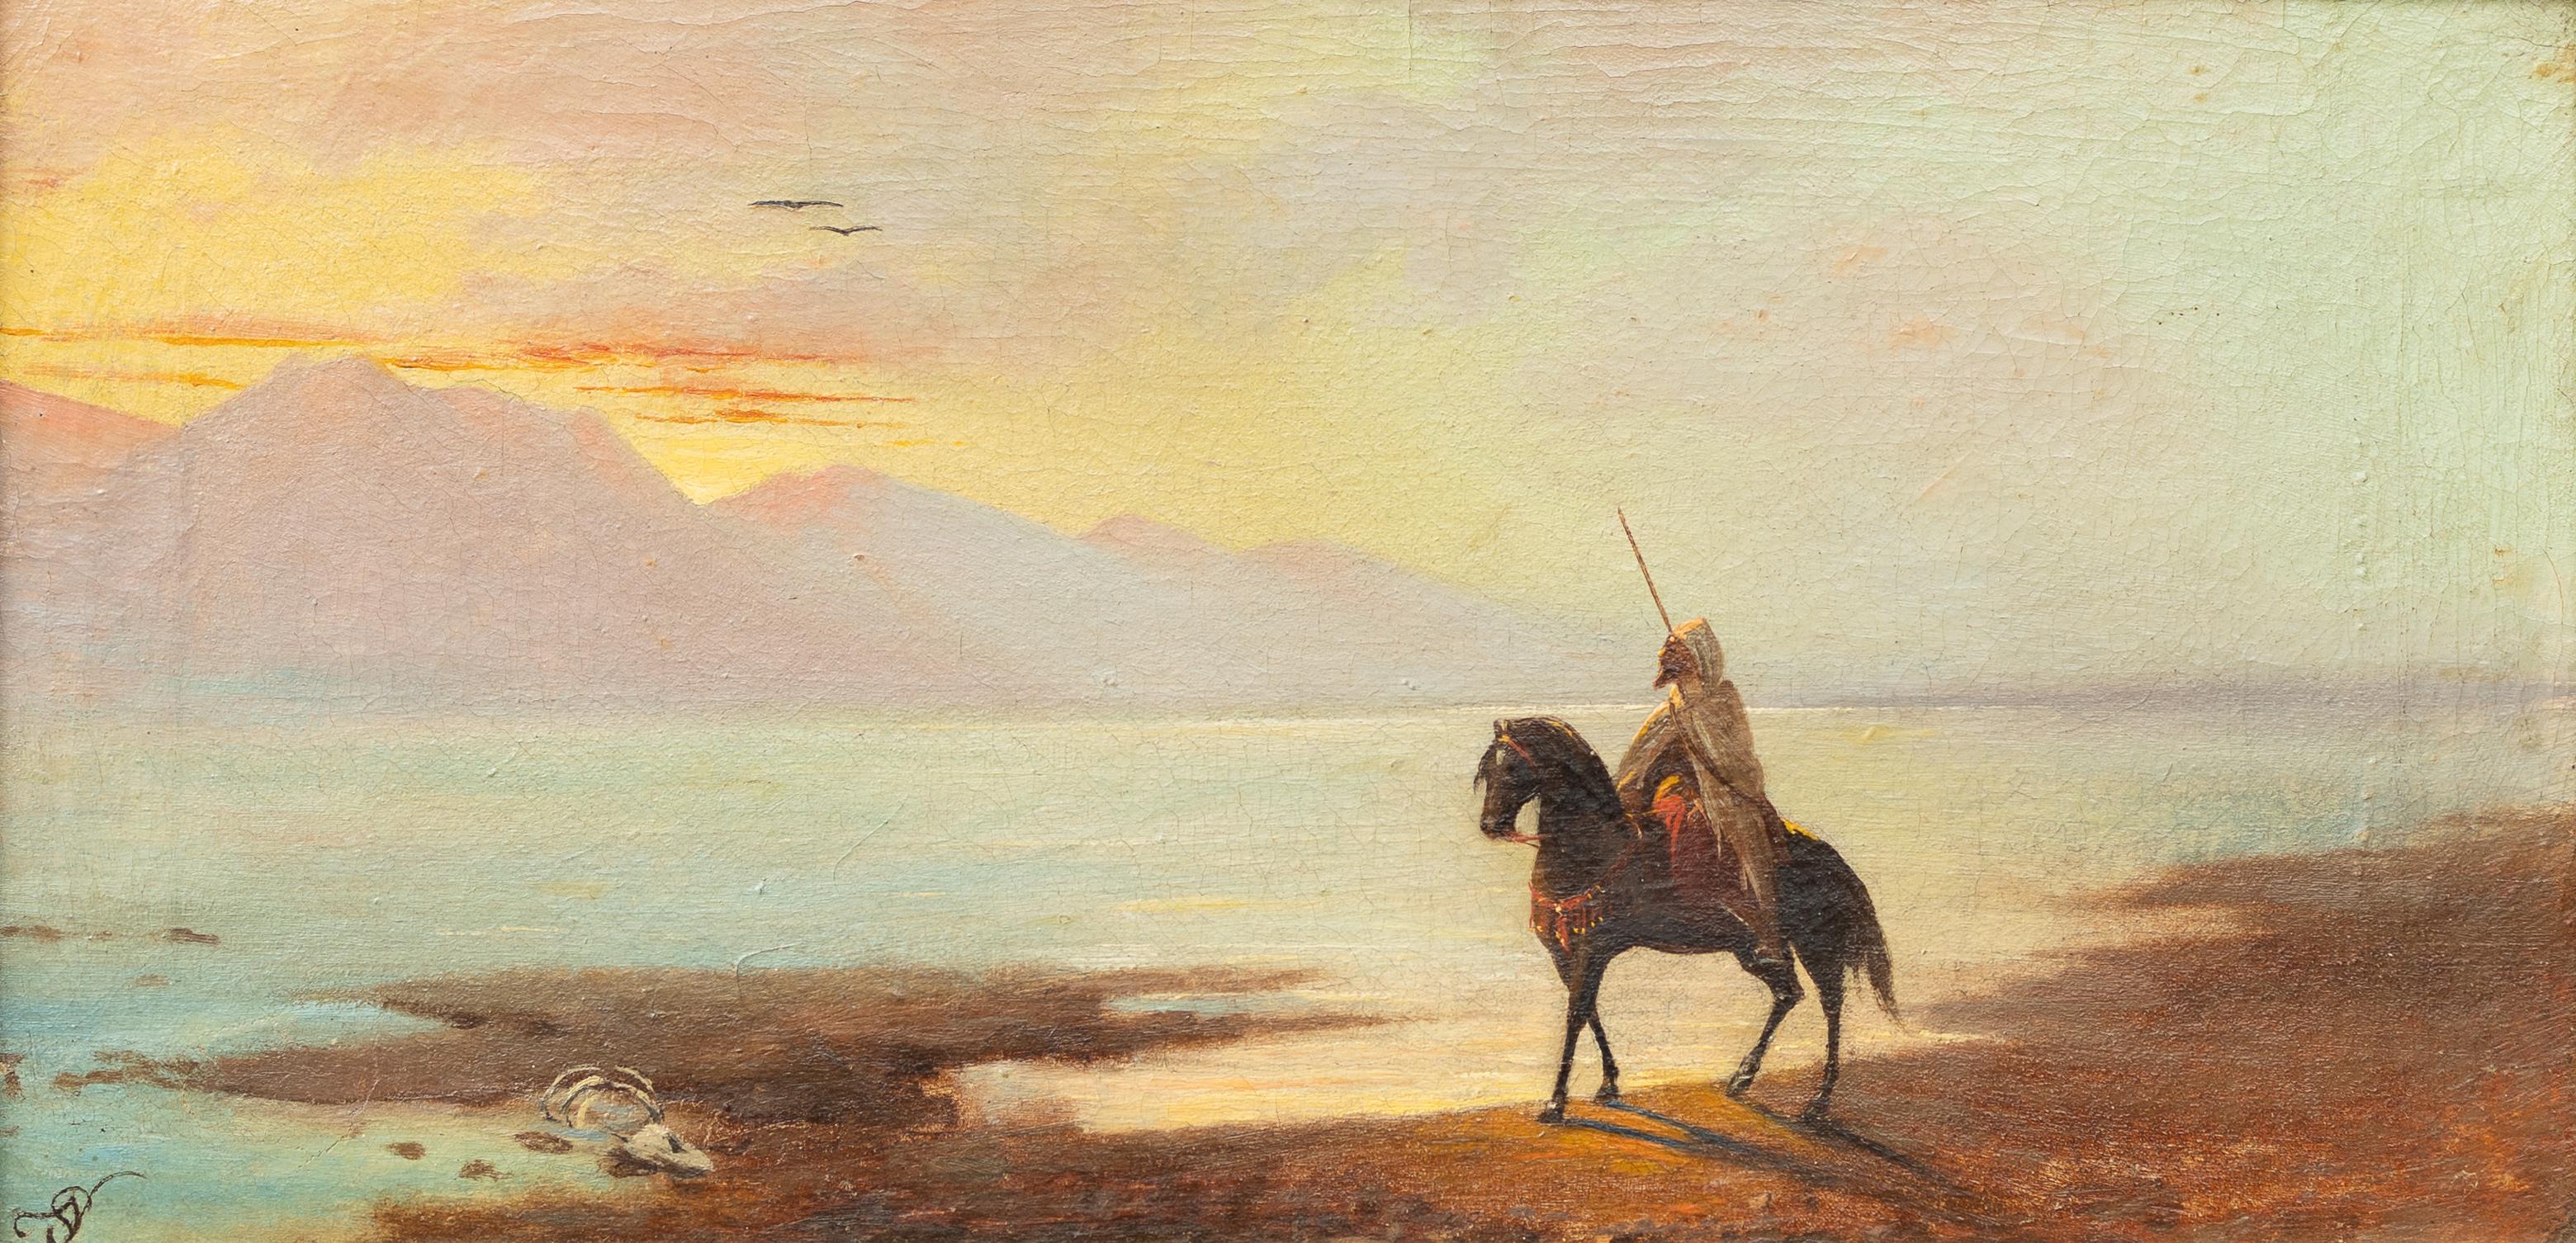 Adolf Schreyer Landscape Painting - Arabian Rider at Dusk